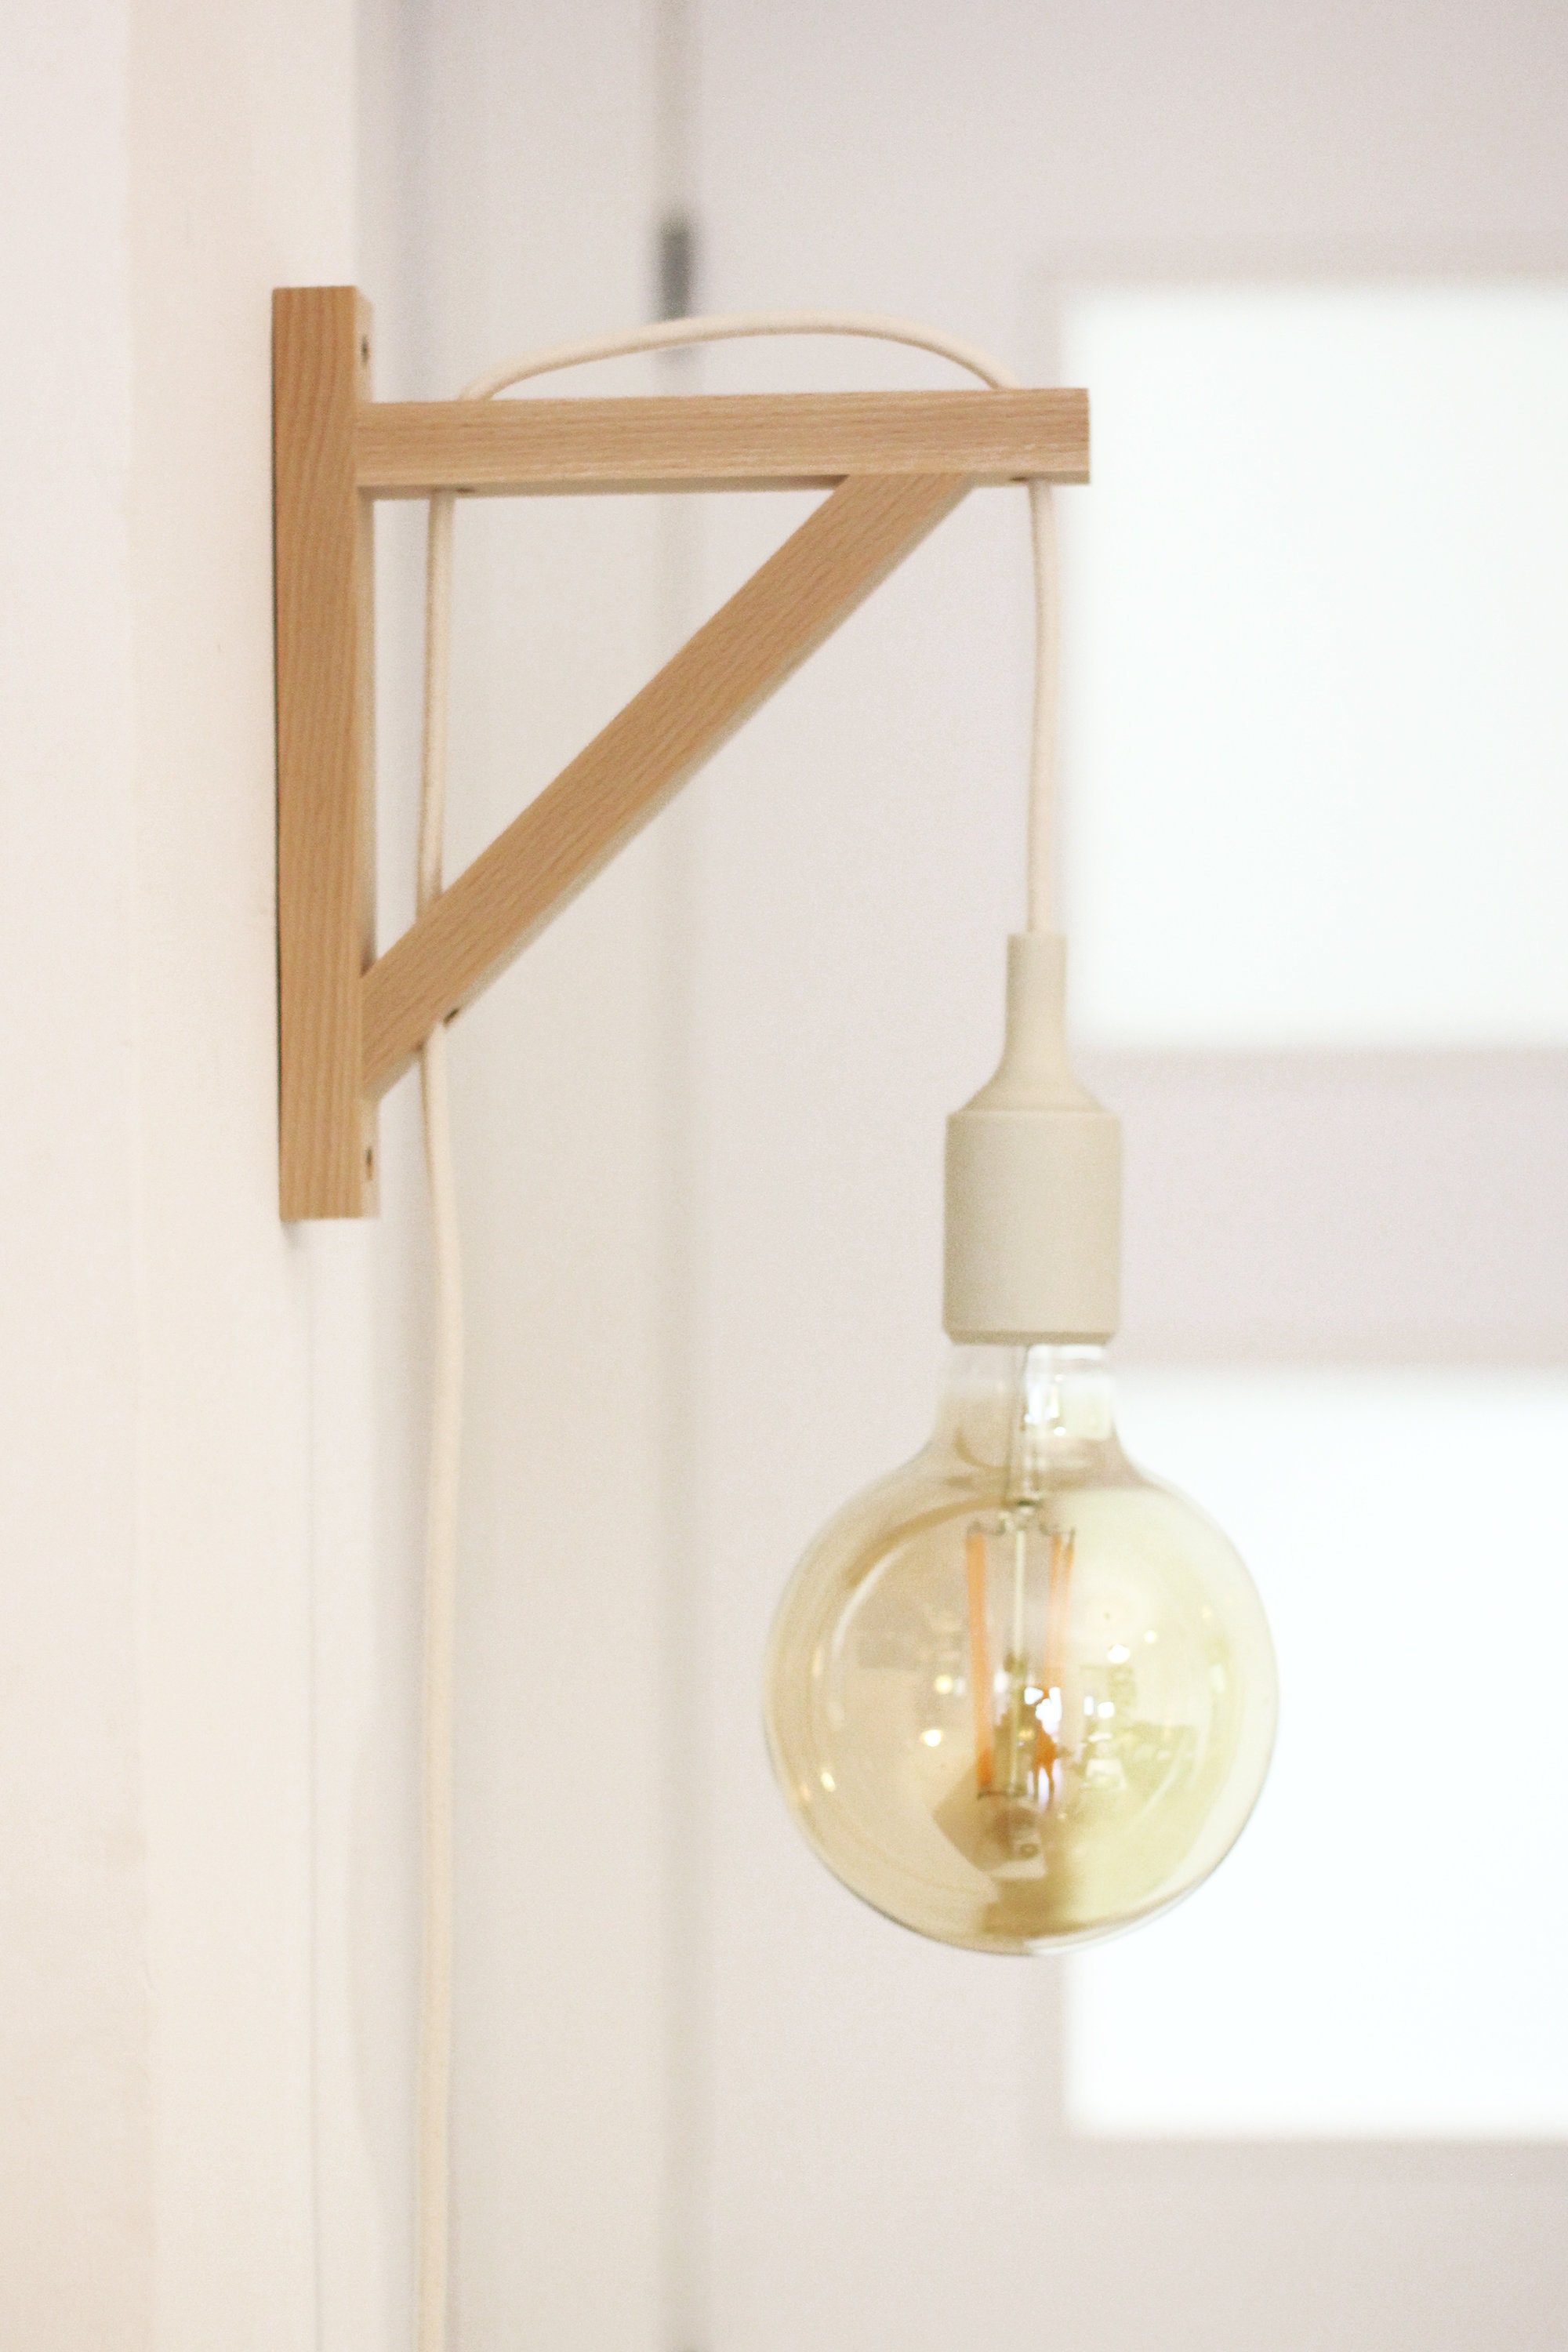 expositie Naar Geven Bracket sconce, Wall lamp, Plug in wall sconce, plug in wall light , nordic  sconce, Wooden Lamp bracket, nordic lamp, simple sconce wood